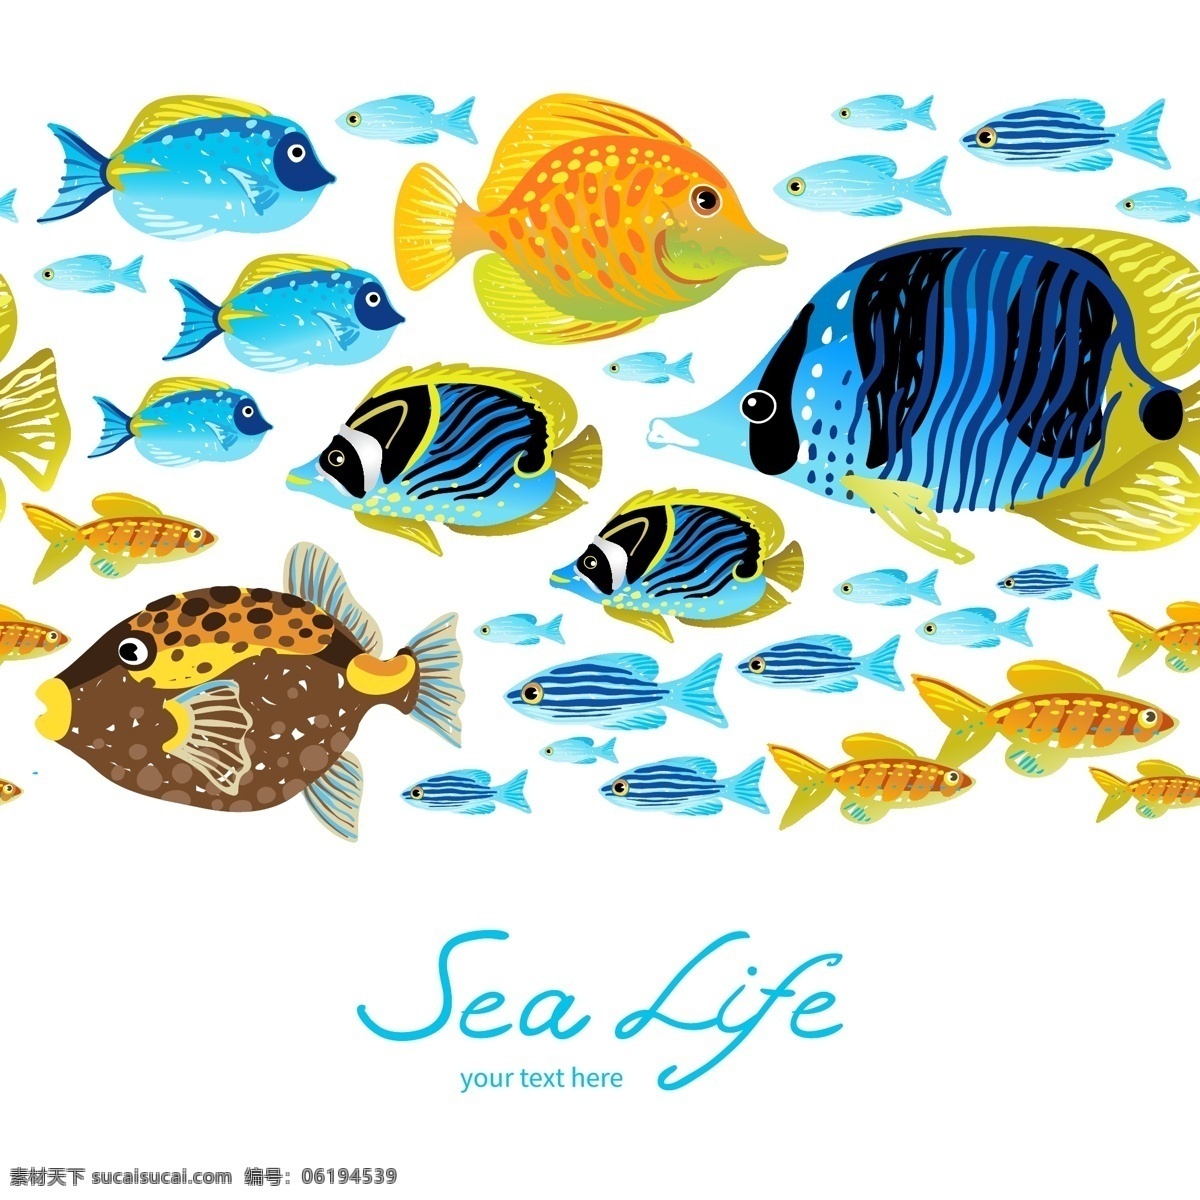 海洋鱼类 水族馆 海洋生物 海报 矢量 卡片 插图 深蓝 海洋 背景 蓝色背景 蓝色 海洋馆 热带鱼 蓝色素材 素材背景 背景蓝色 素材蓝色 海洋馆背景 生物世界 鱼类